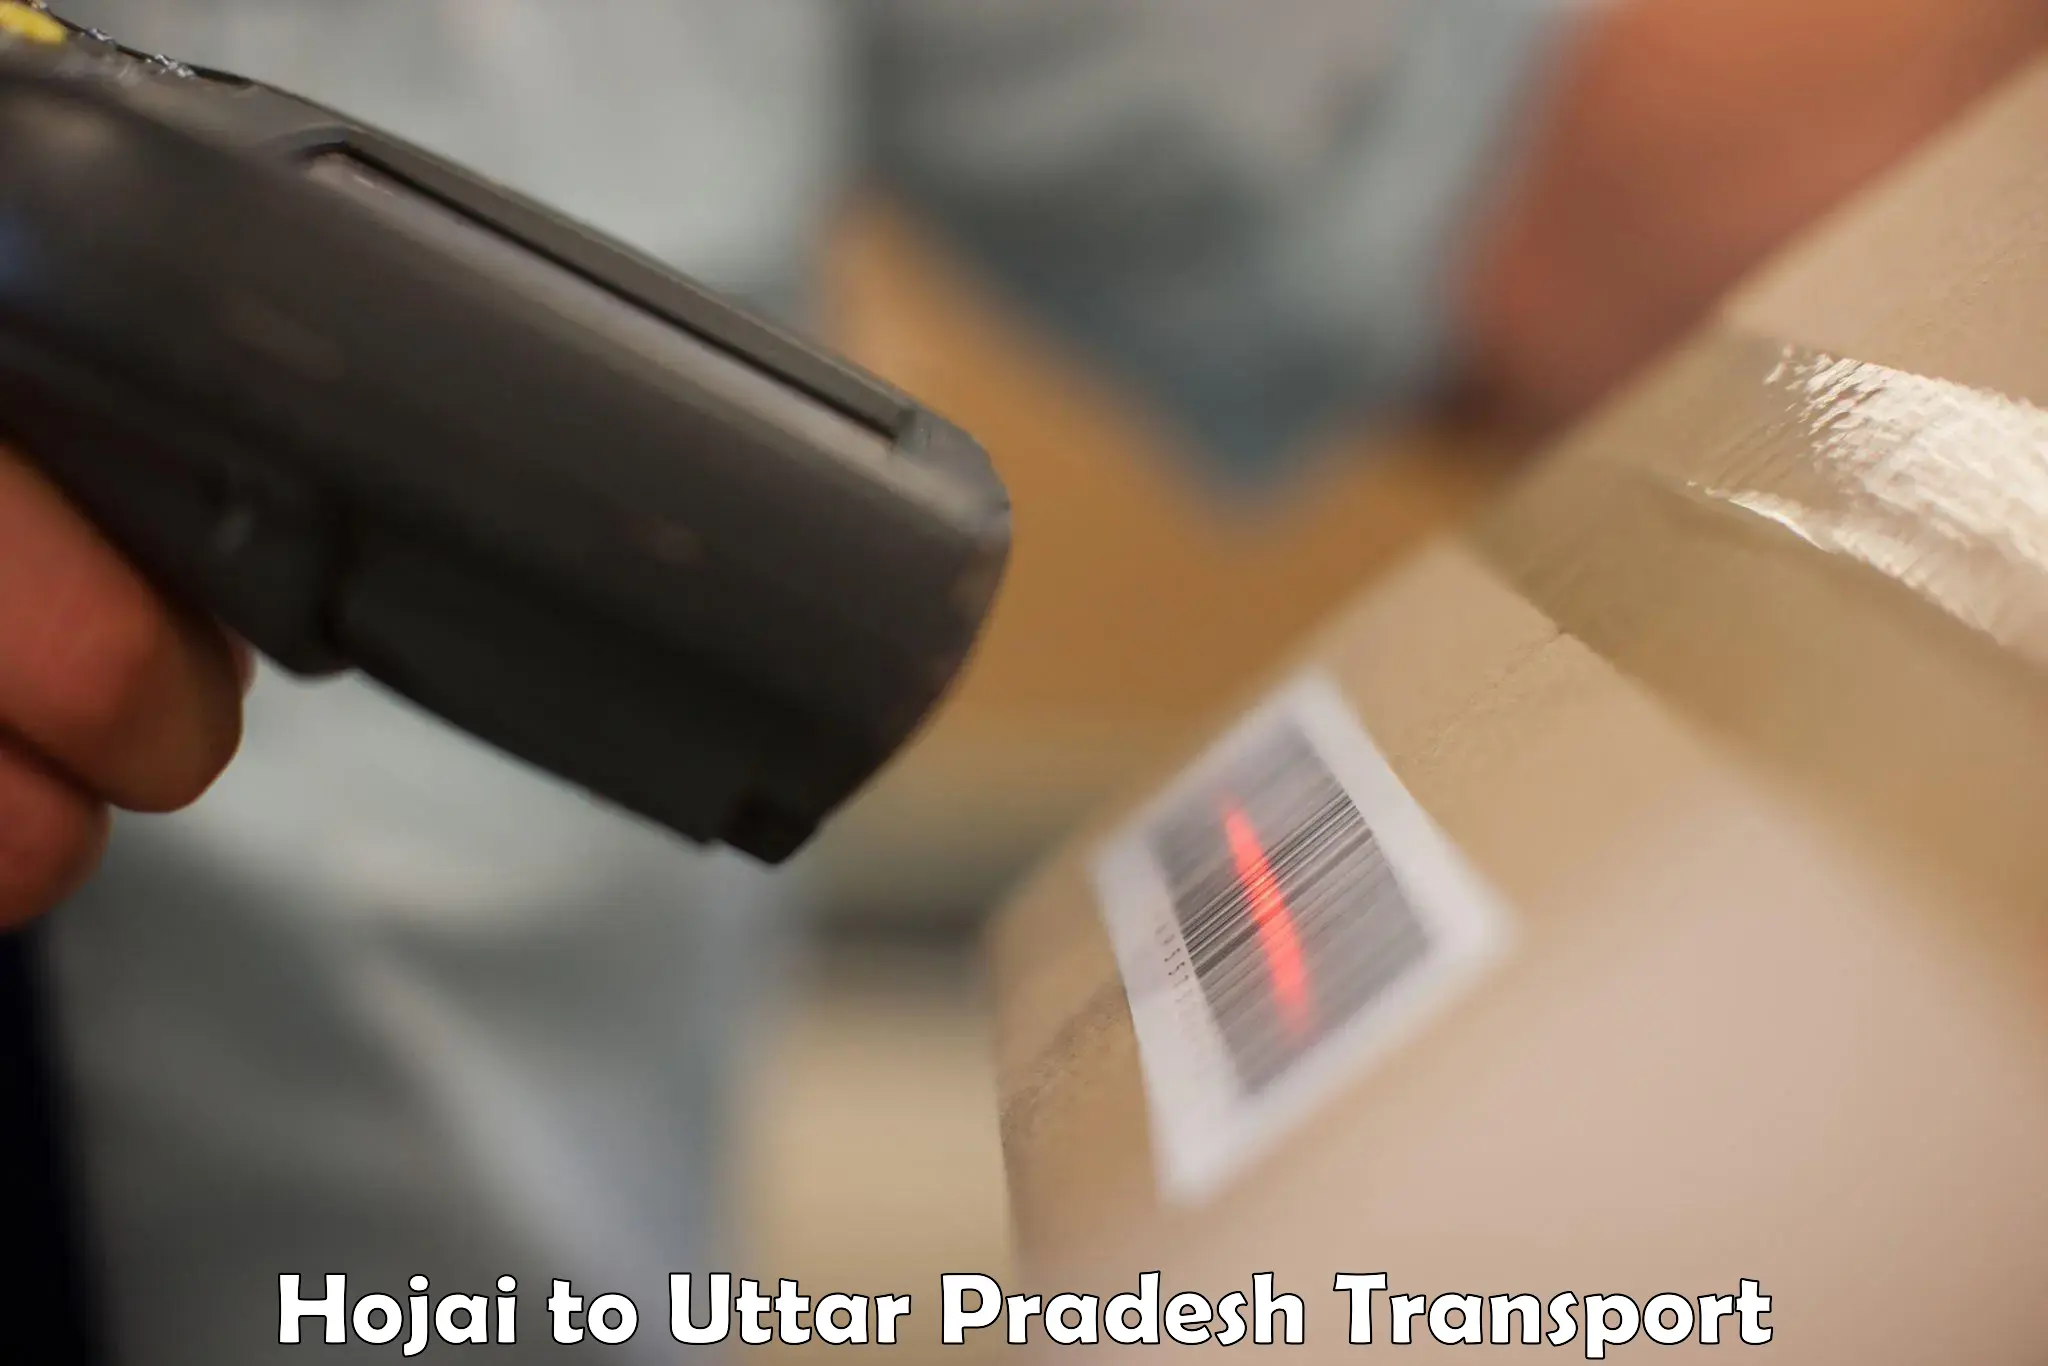 Luggage transport services Hojai to Cholapur